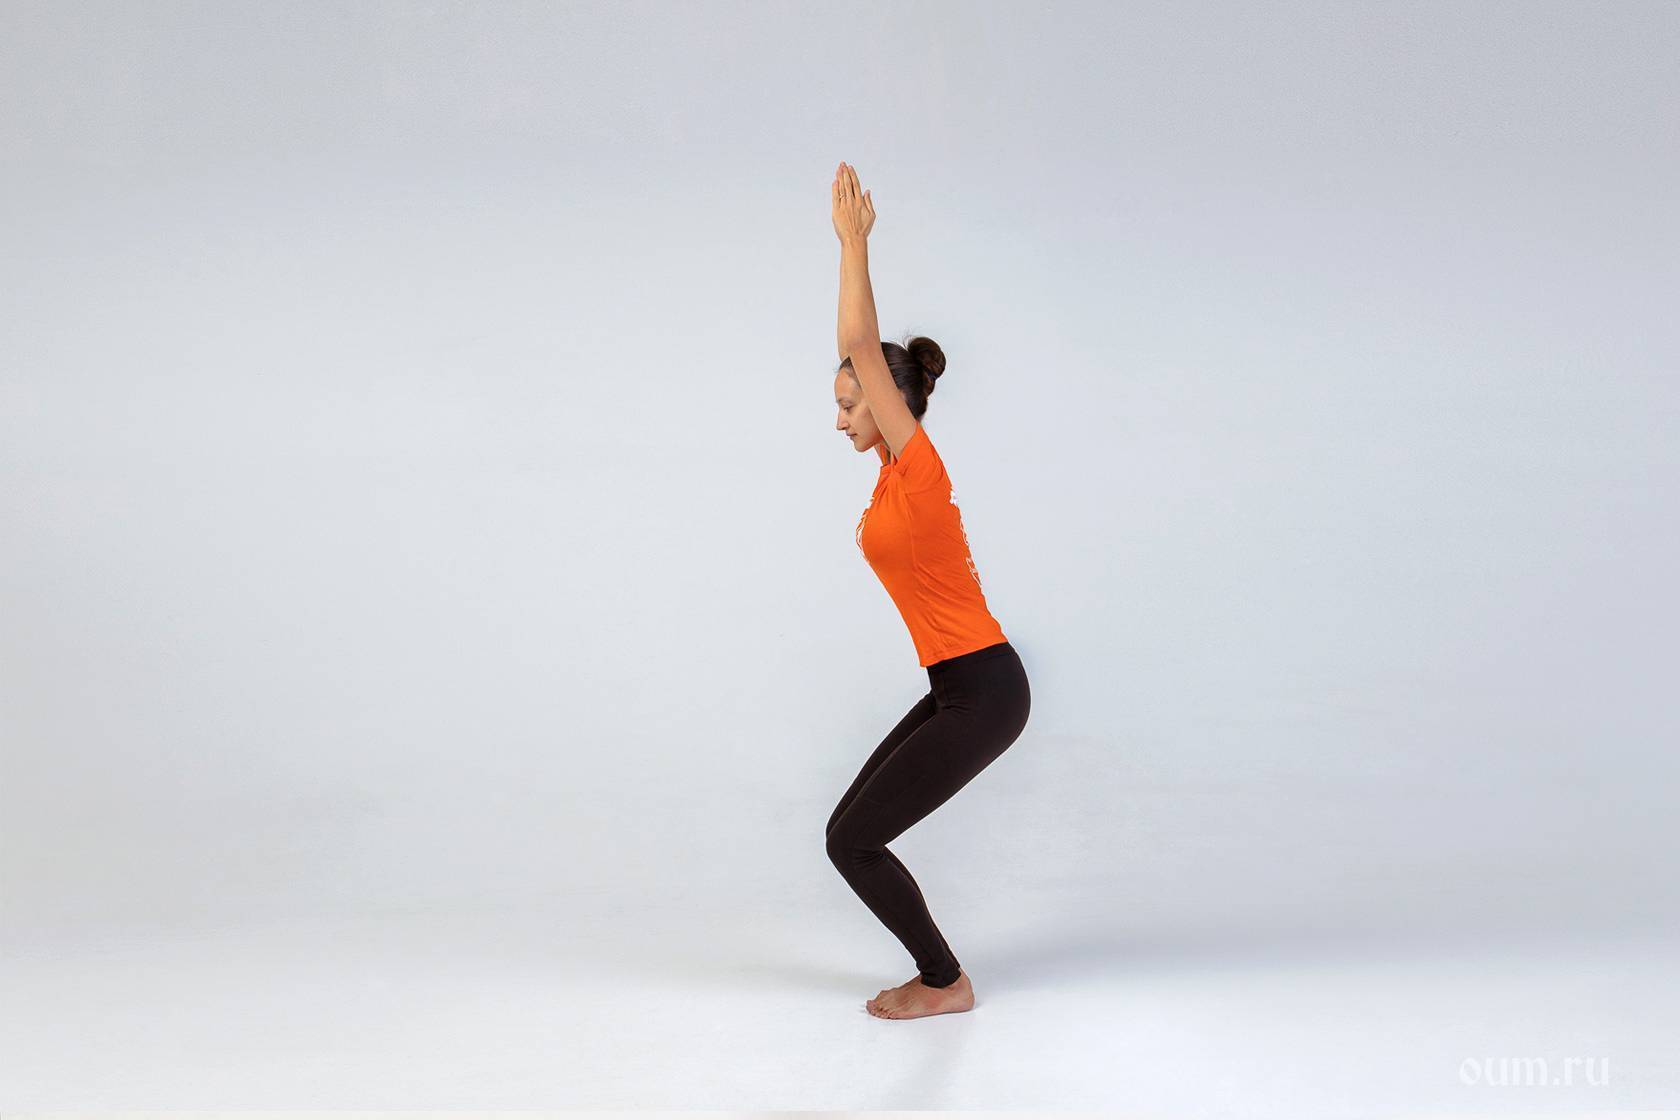 Асаны сидя в йоге: польза и техника безопасности упражнений, а также их названия